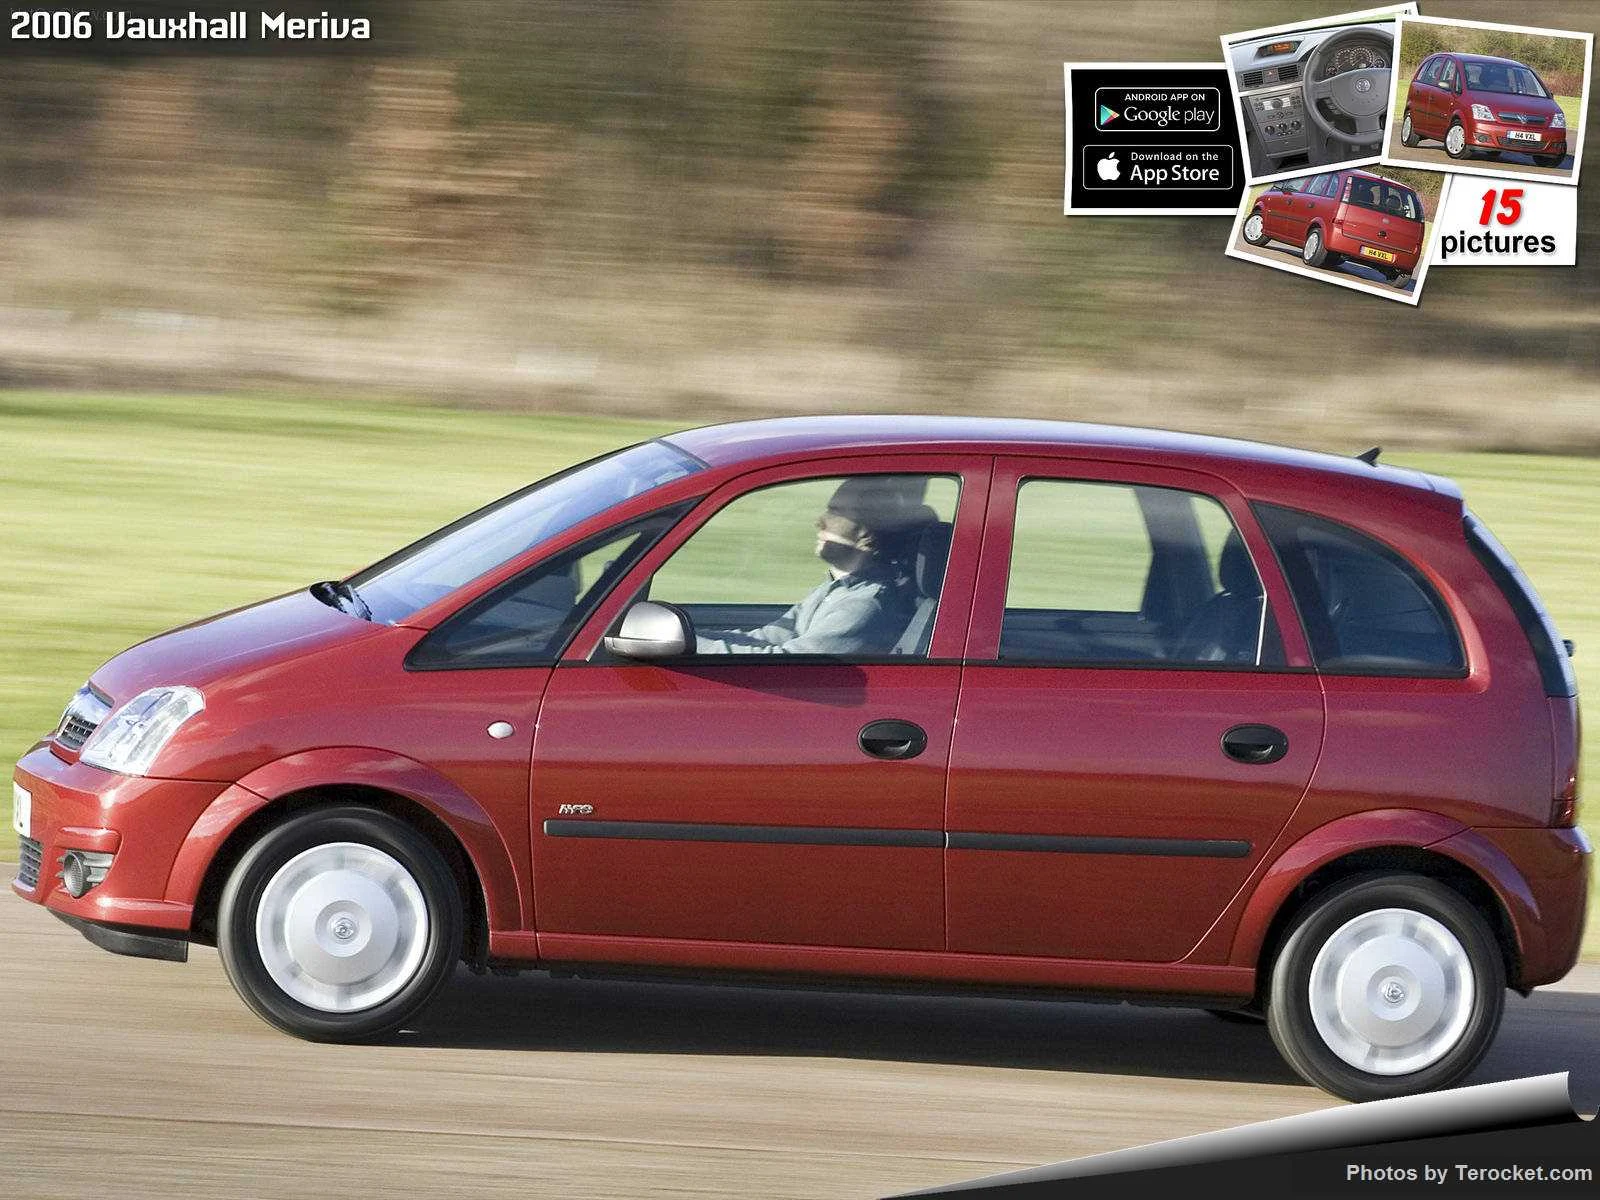 Hình ảnh xe ô tô Vauxhall Meriva 2006 & nội ngoại thất